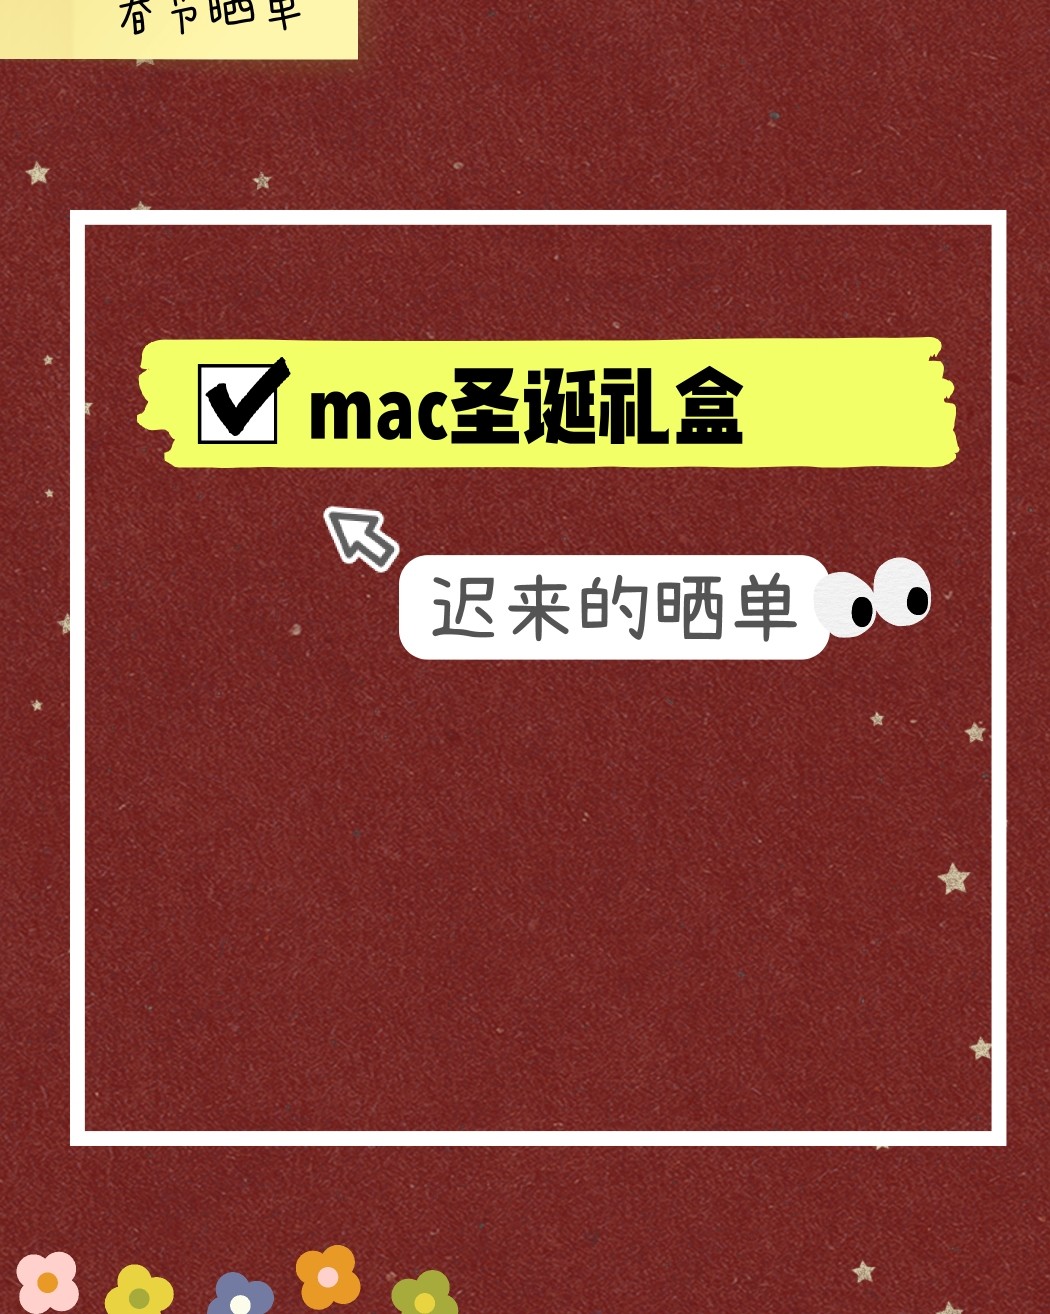 新春晒单挑战之mac圣诞礼盒 圣诞节前在mac官网折扣时购入